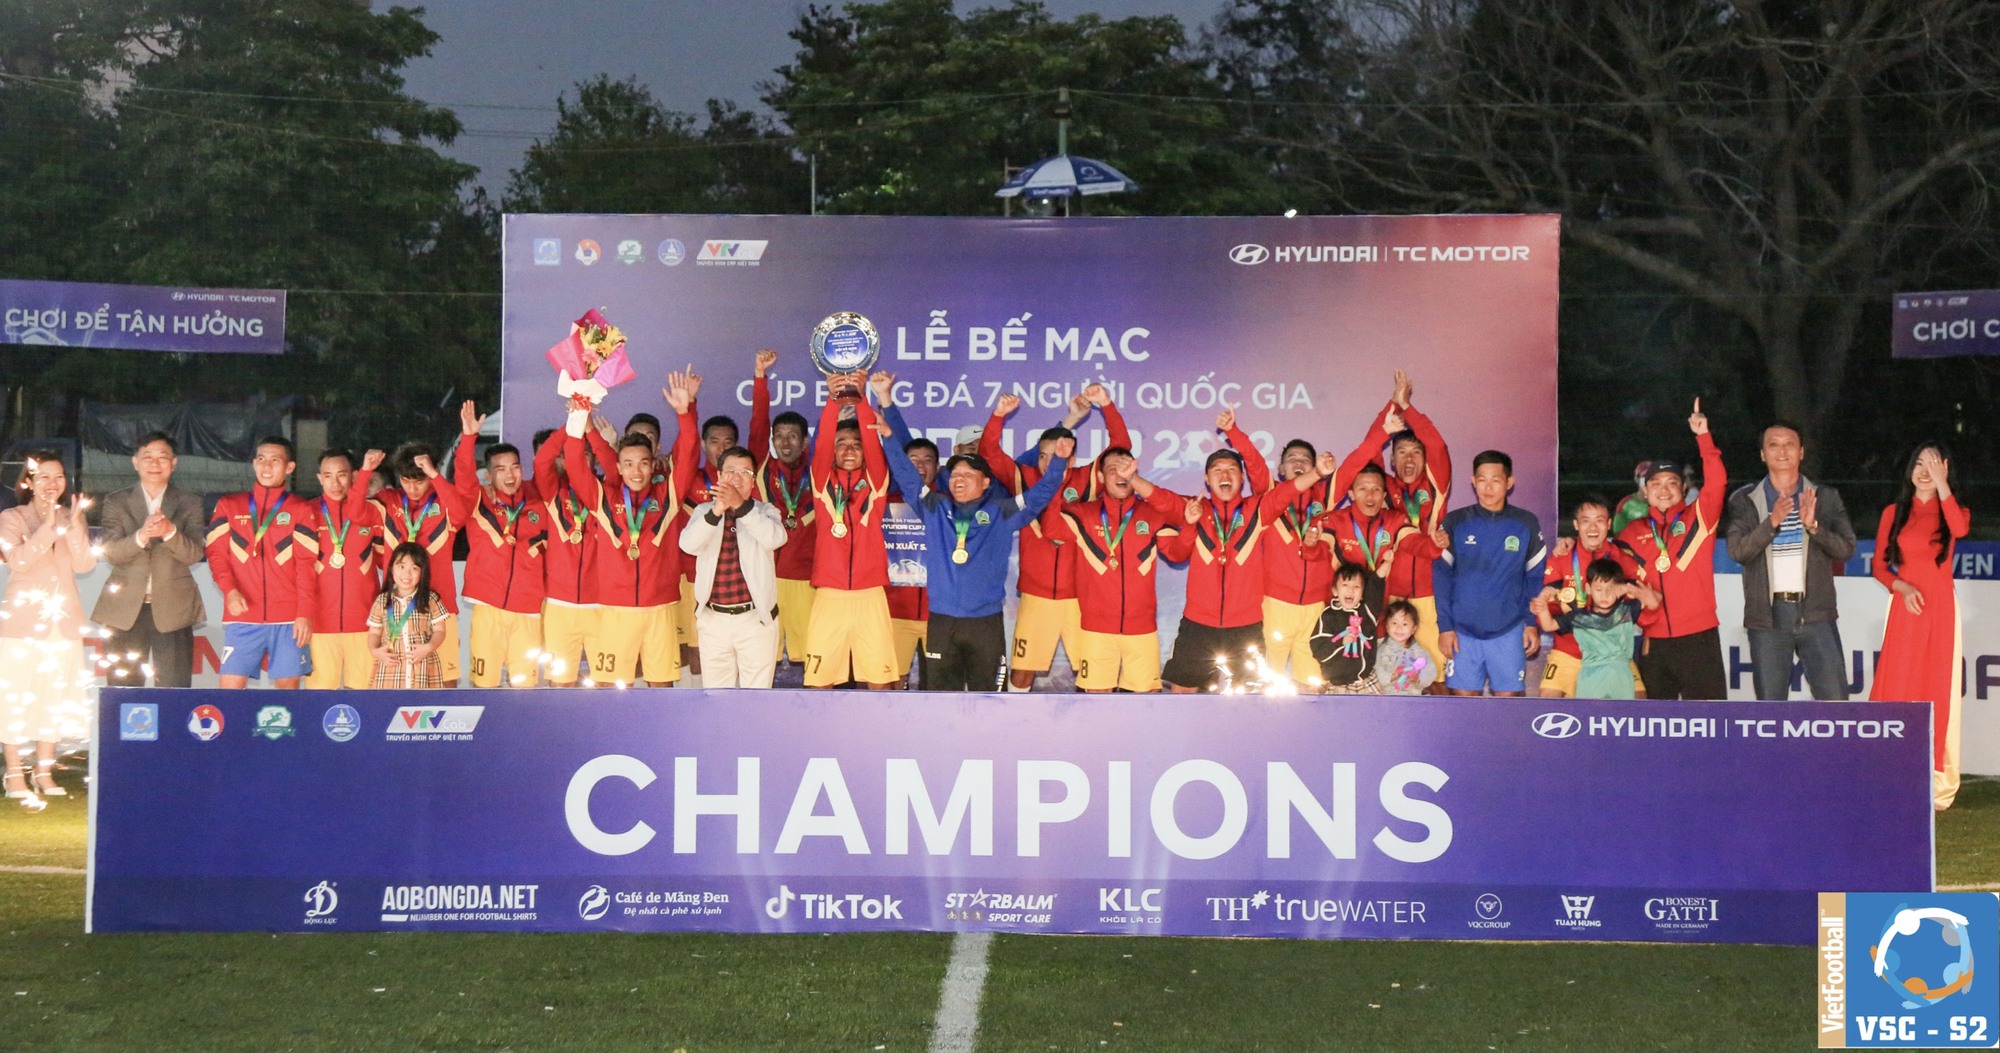 Xổ số kiến thiết Đắk Lắk vô địch giải Bóng đá 7 người quốc gia khu vực Tây Nguyên - Ảnh 1.